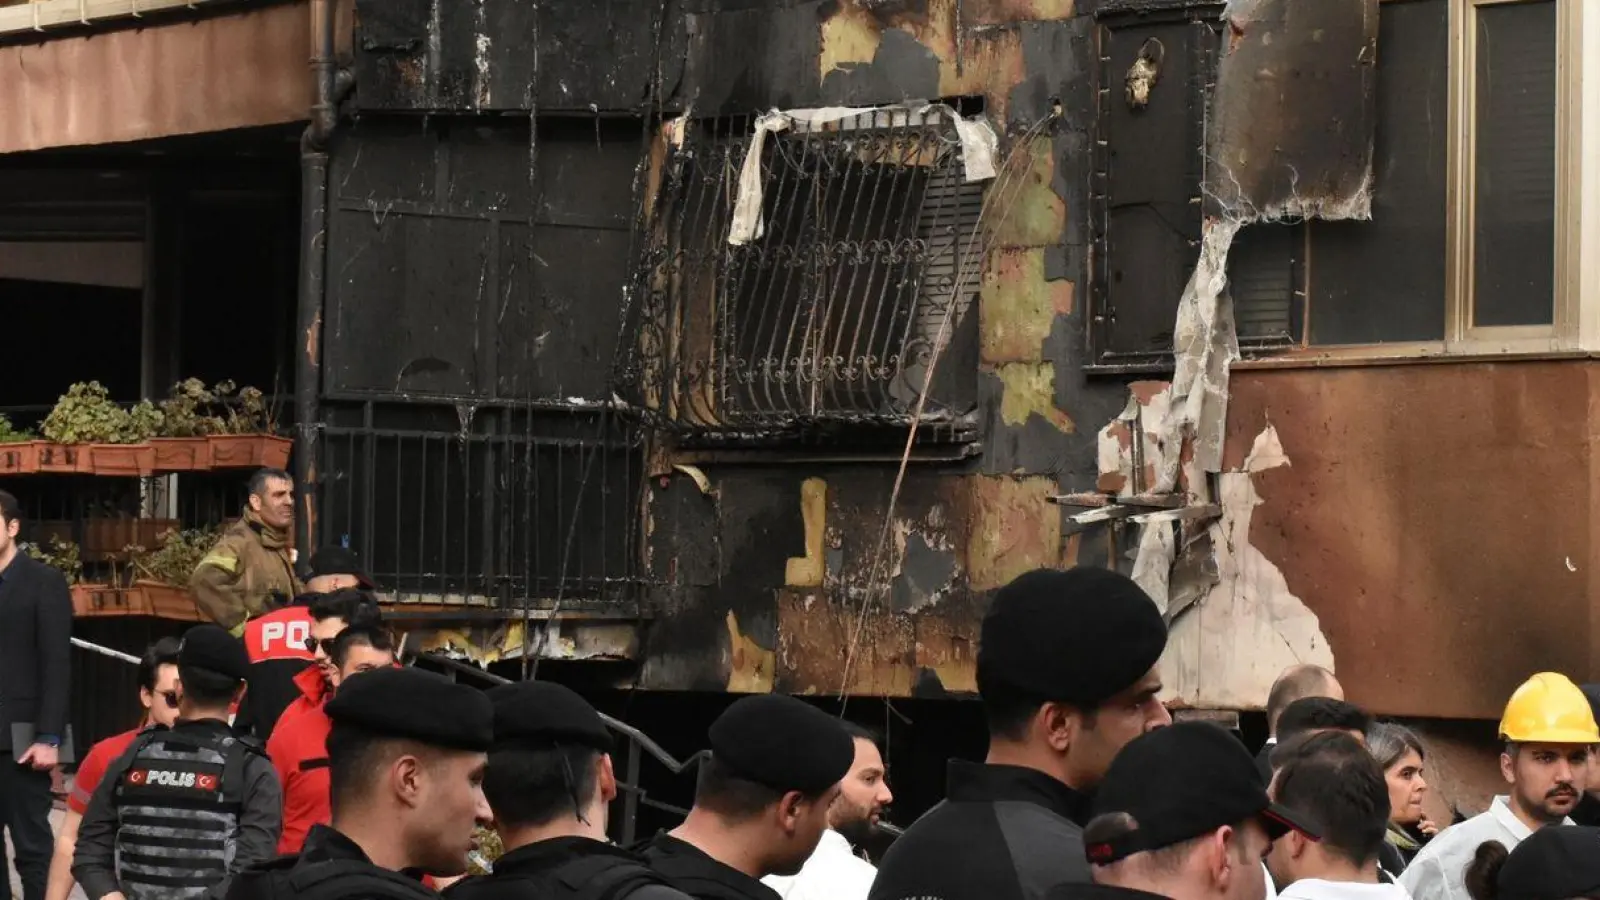 Einsatzkräfte stehen nach einem Brandausbruch vor einem teilweise verbrannten Gebäude. (Foto: Safar Rajabov/XinHua/dpa)